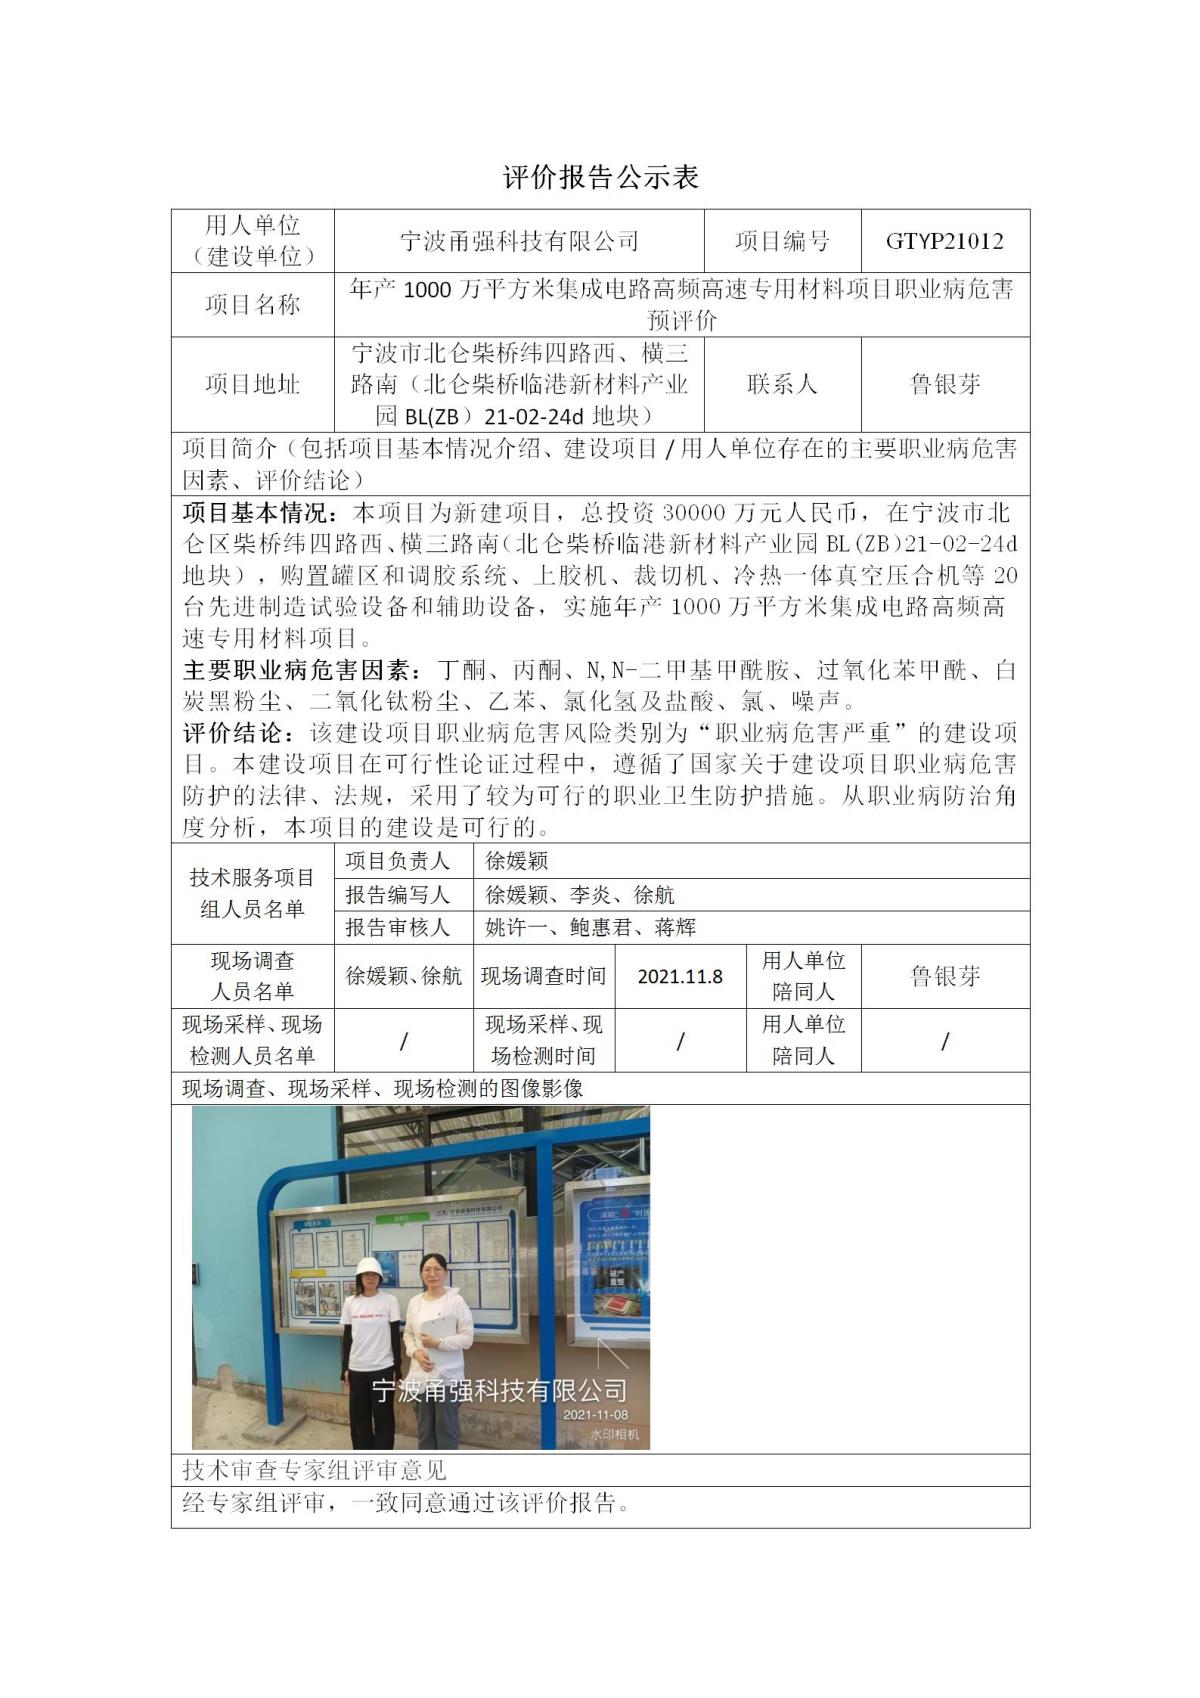 评价报告公示表-GTYP21012甬强科技_01.jpg